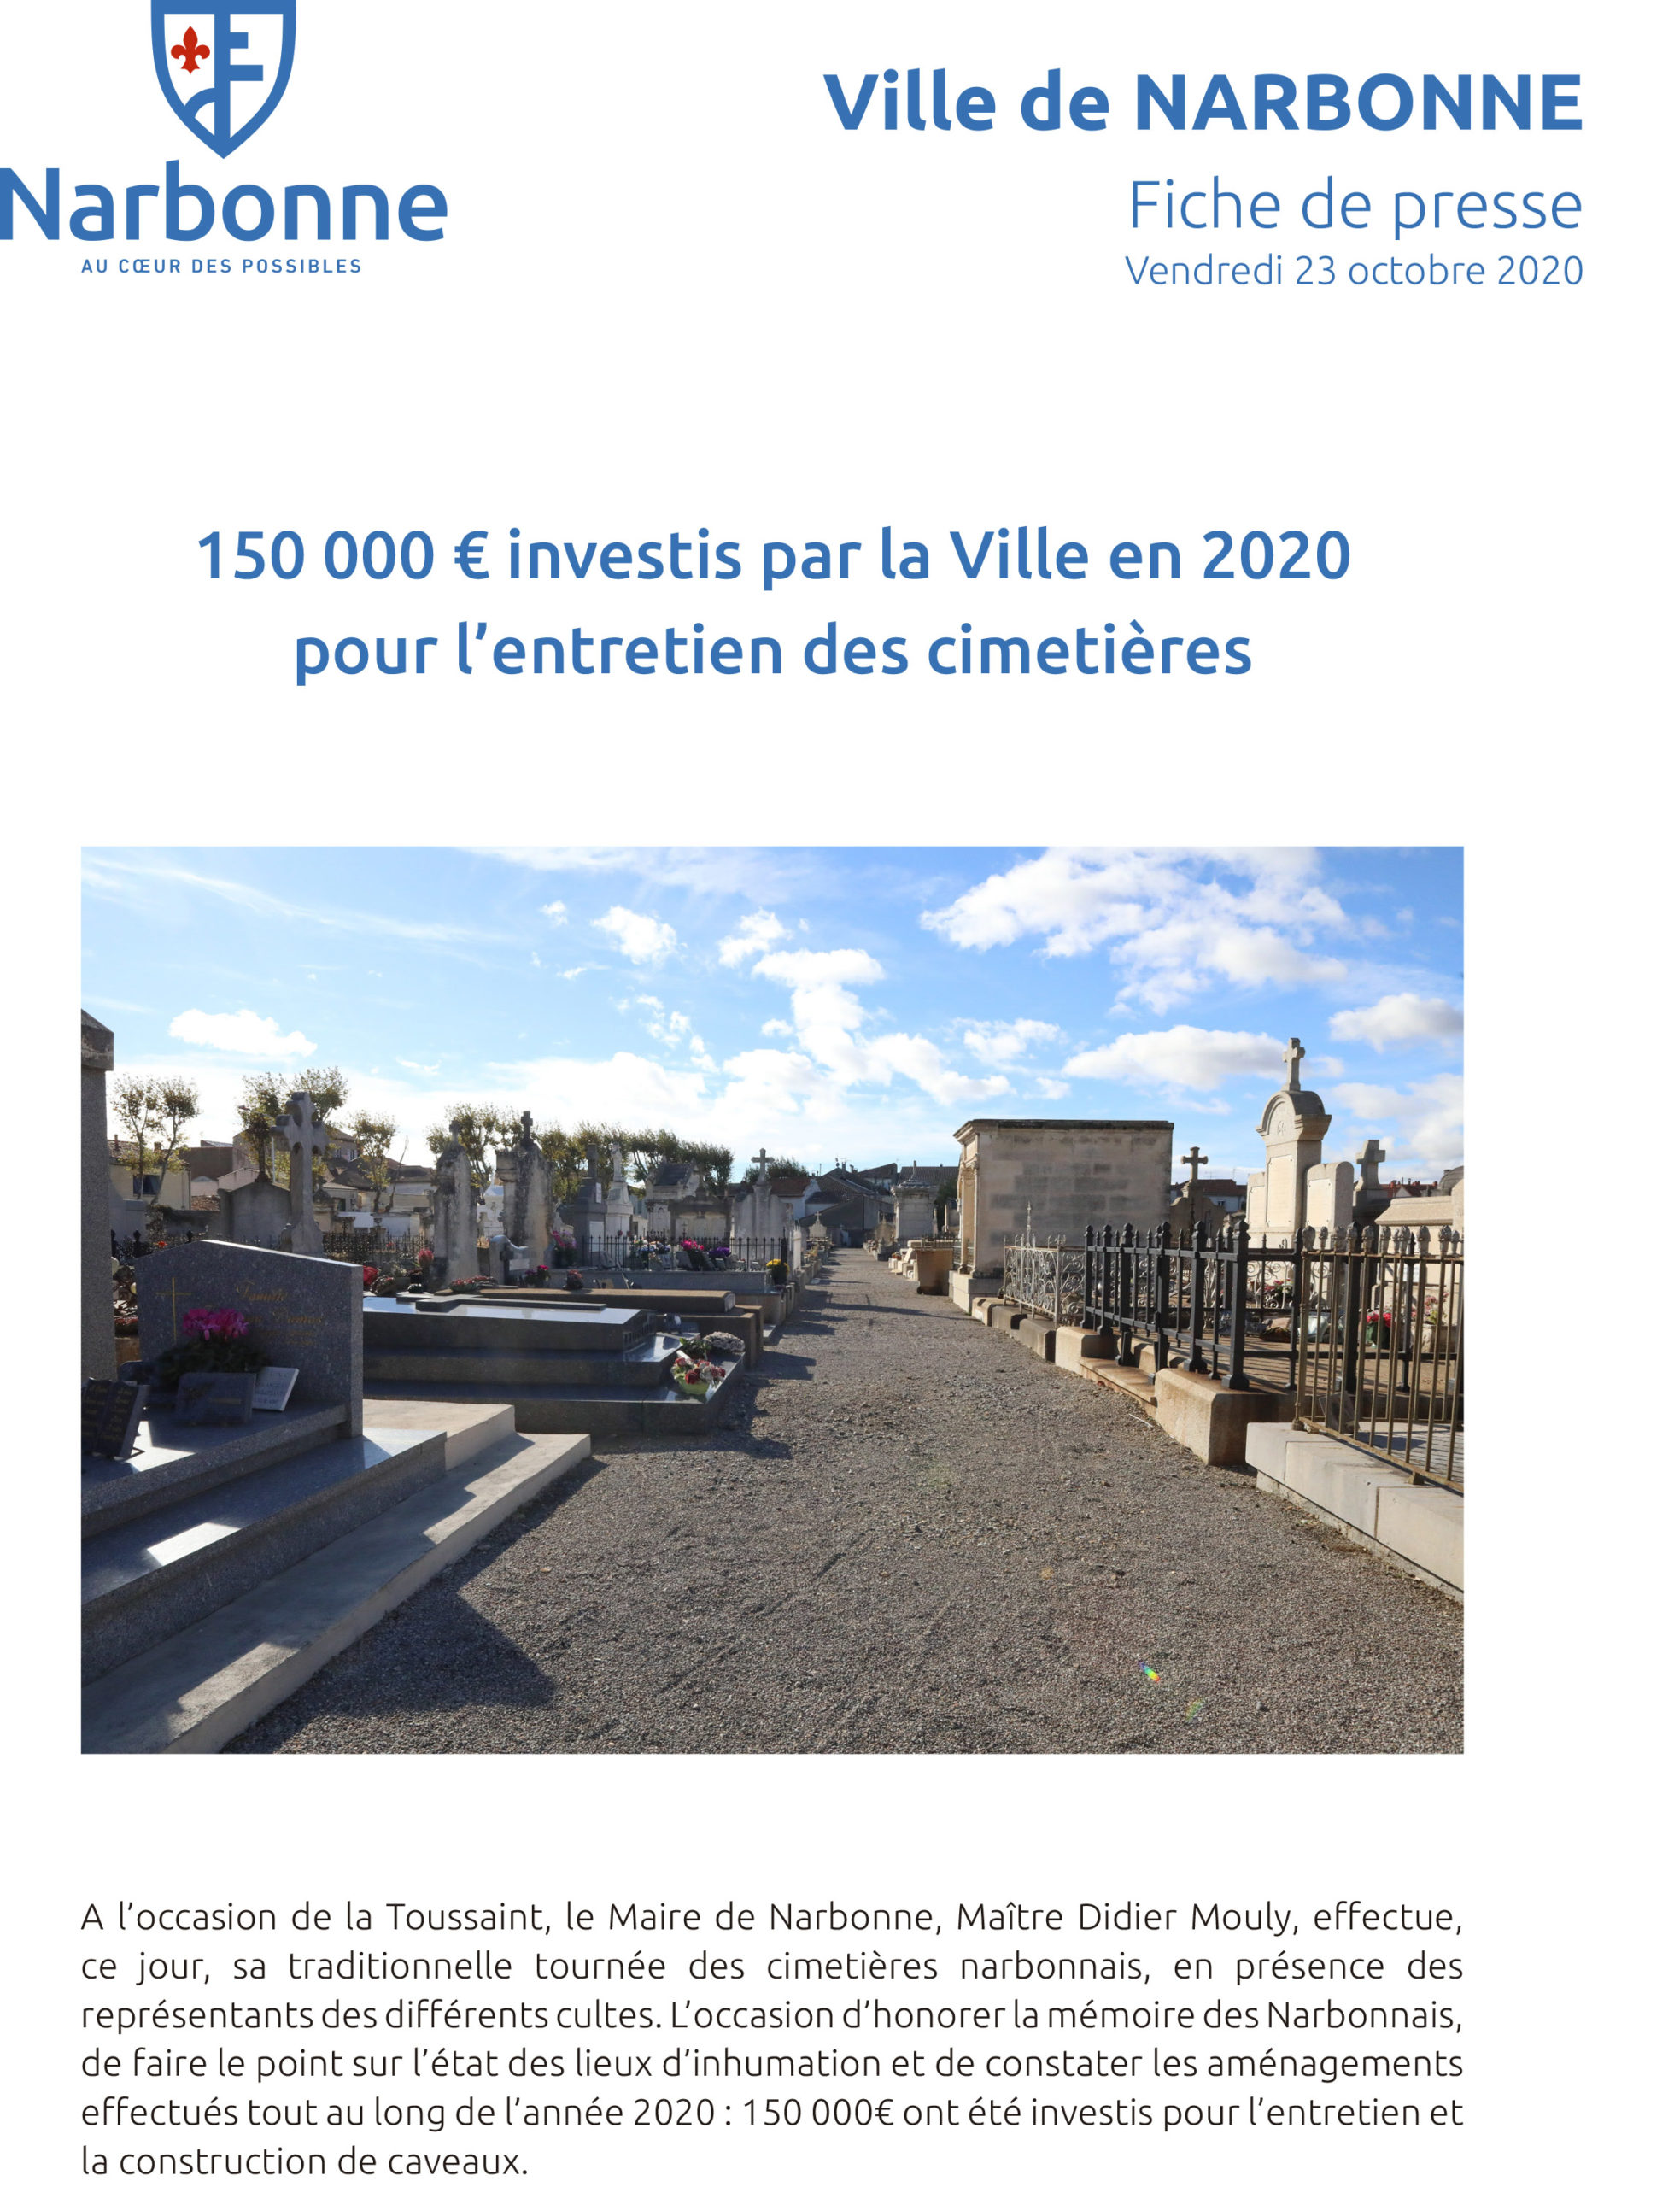 Fiche: 150 000€ investis dans les cimetières en 2020